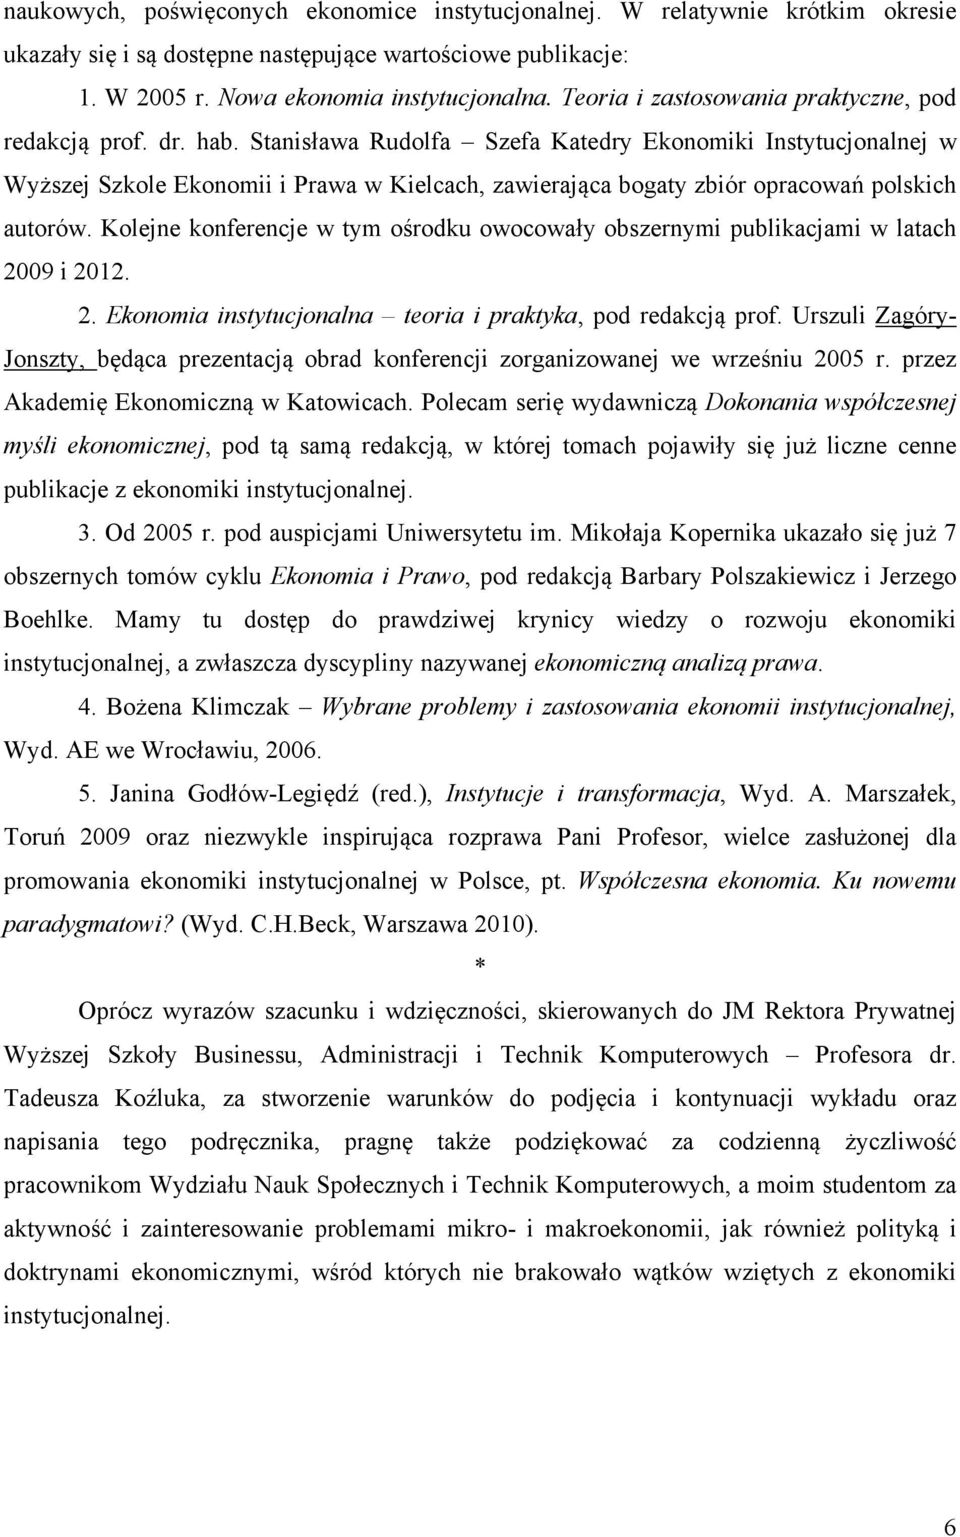 Stanisława Rudolfa Szefa Katedry Ekonomiki Instytucjonalnej w Wyższej Szkole Ekonomii i Prawa w Kielcach, zawierająca bogaty zbiór opracowań polskich autorów.